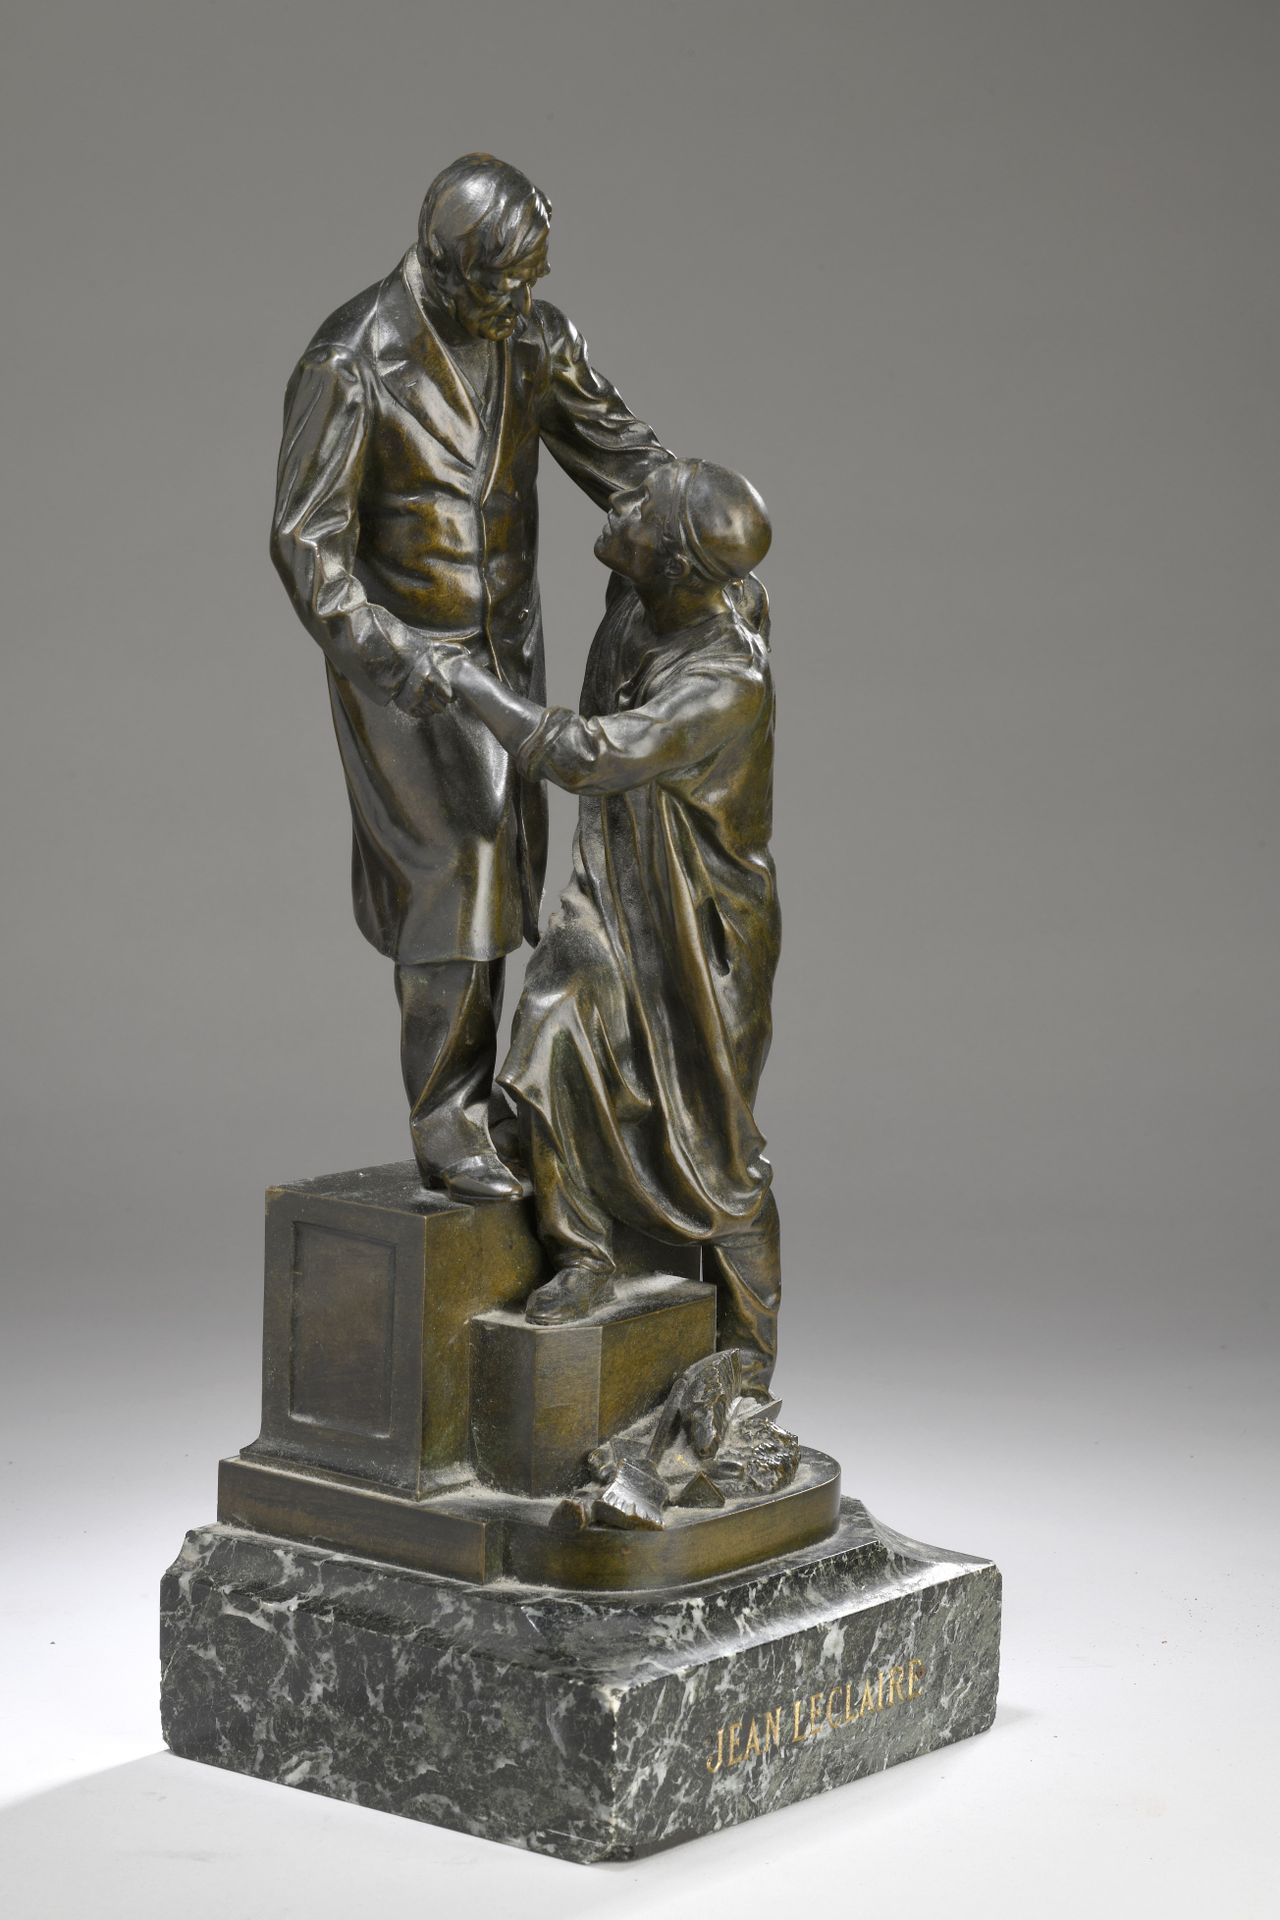 Null 艾梅-朱尔斯-达鲁(1838-1902) 
让-勒克莱尔纪念碑
青铜，带褐色铜锈 大理石底座
侧面有签名 "DALOU"，侧面有铸造厂印章 "FUMI&hellip;